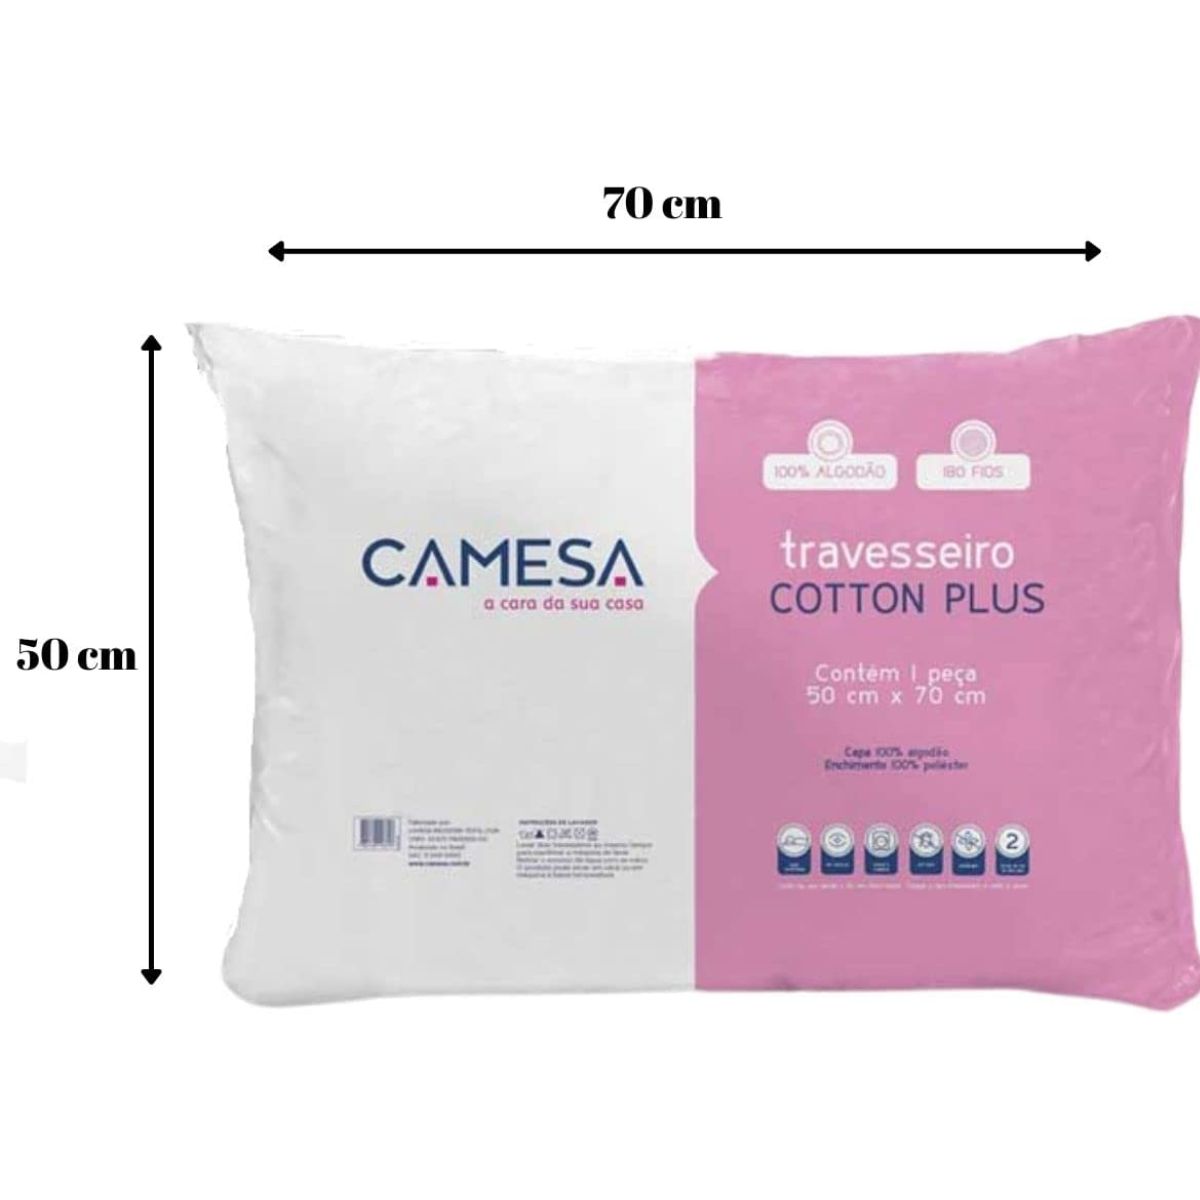 travesseiro-extra-firme-poliester-180-fios-50cm-x-70cm-branco-cotton-plus-camesa-2.jpg